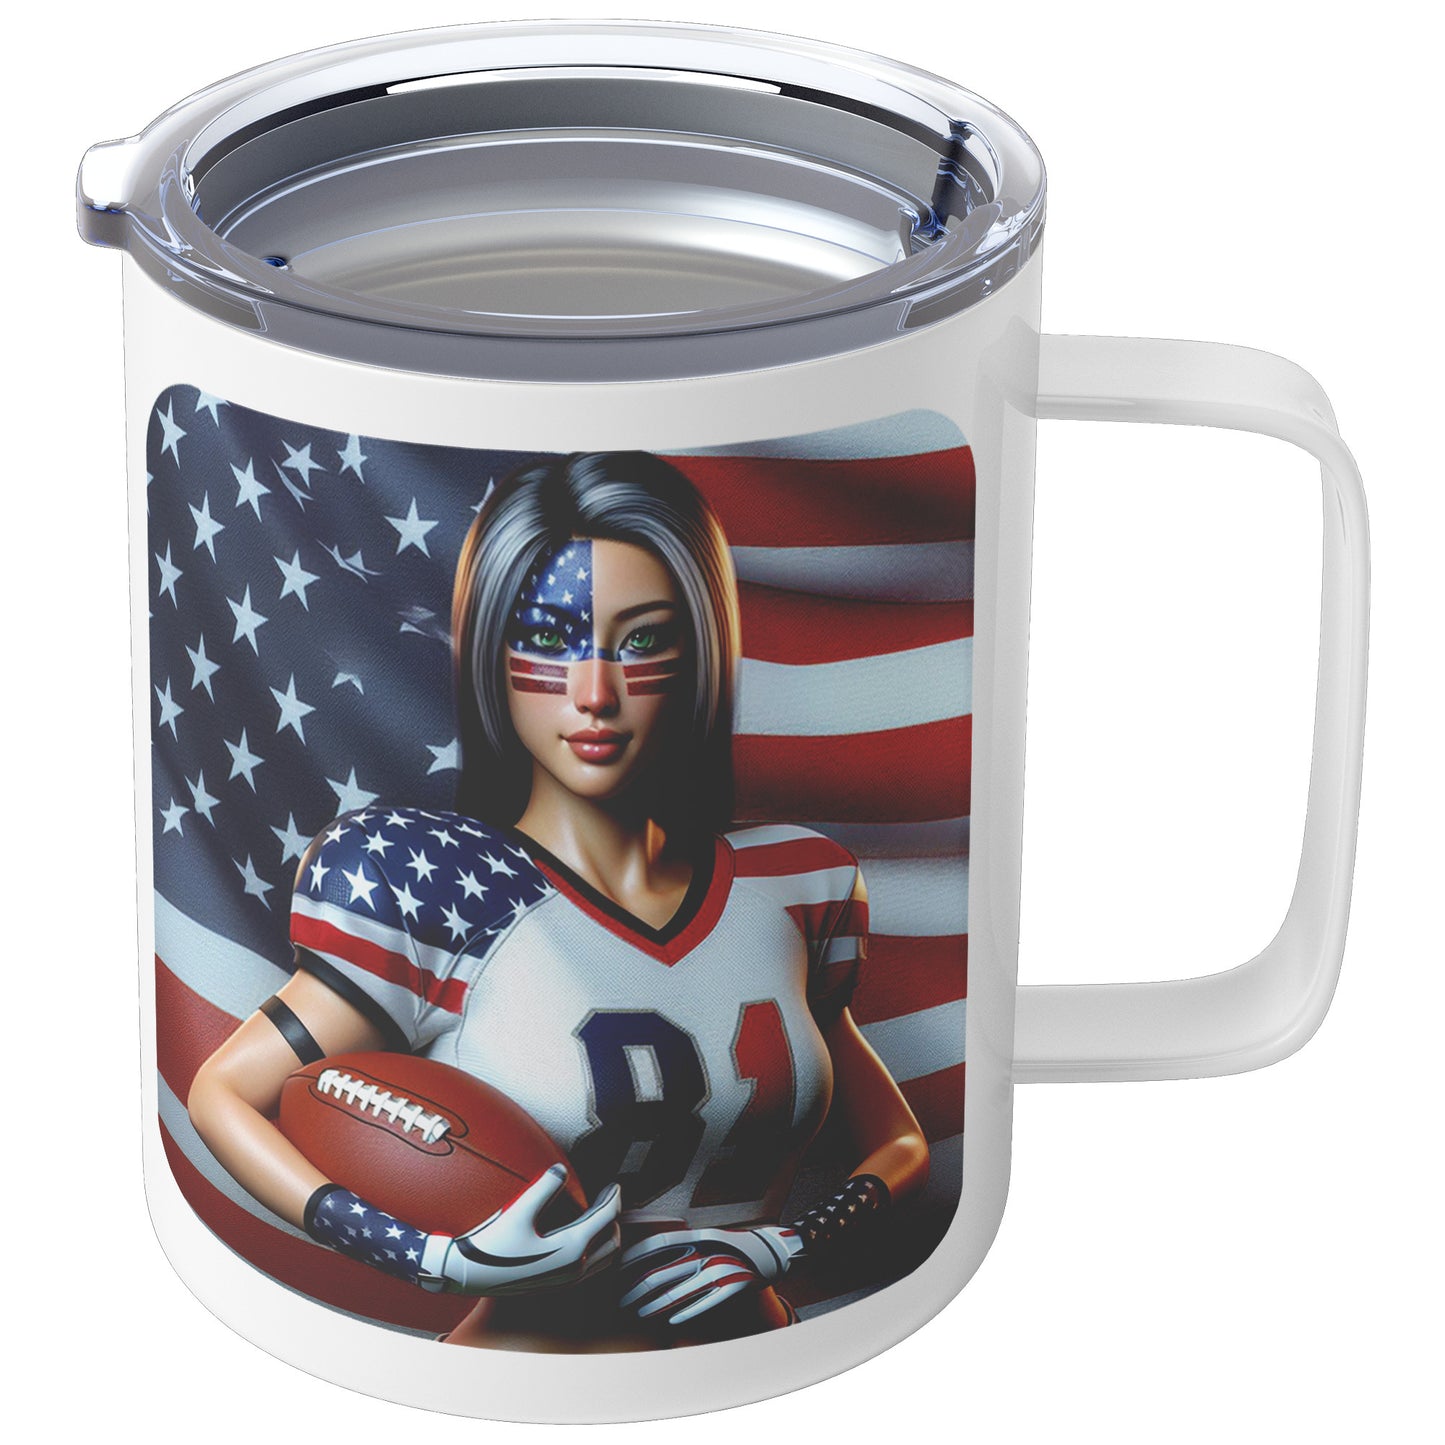 Woman Football Player - Insulated Coffee Mug #18